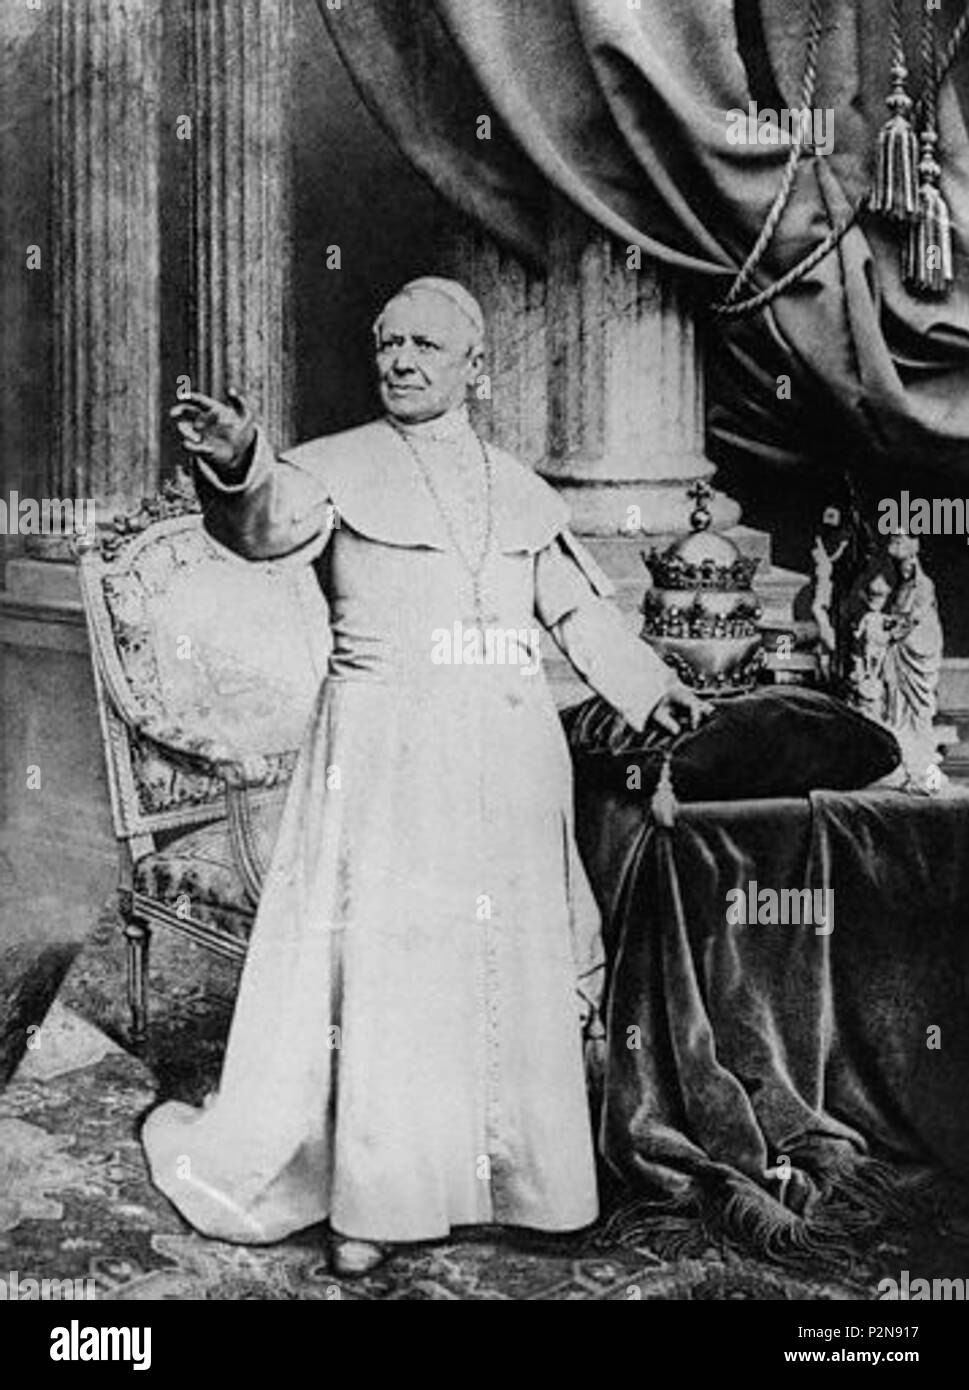 . Englisch: Papst Pius IX., der vor seinem päpstlichen Tiara. ca. 1878. Unbekannt 72 Papst - Pius IX-02 Stockfoto